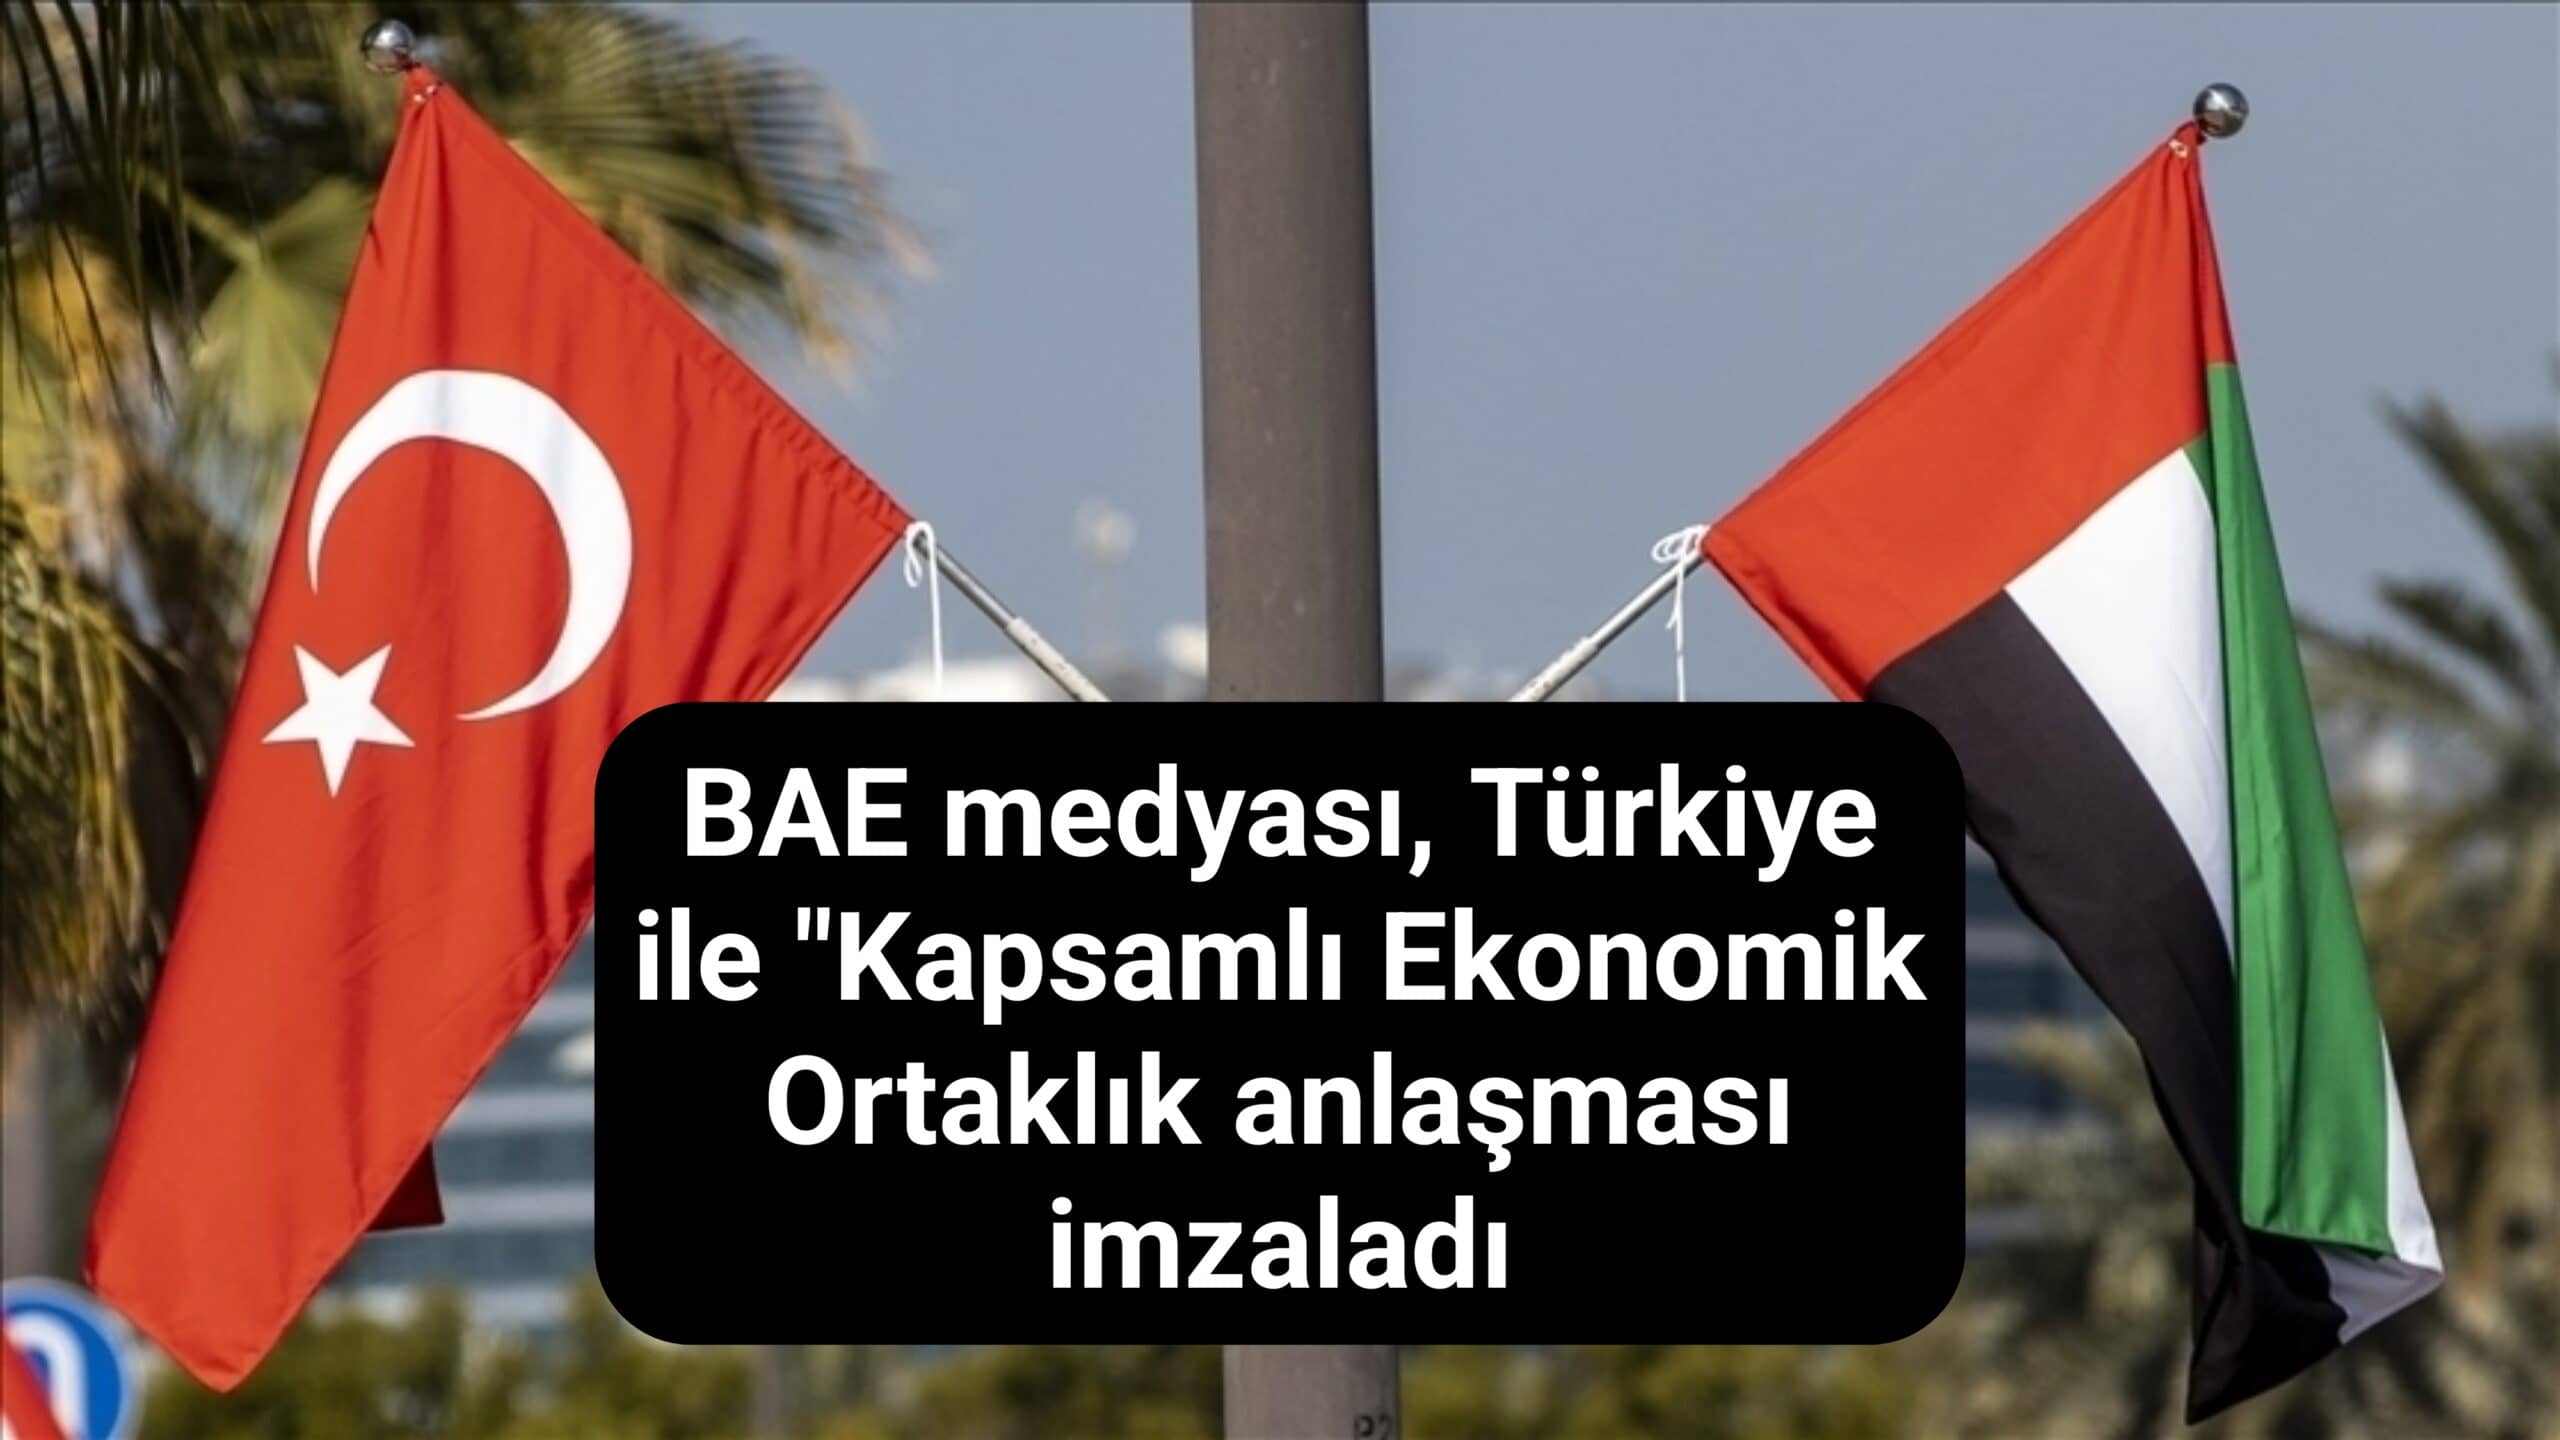 BAE medyası, Türkiye ile "Kapsamlı Ekonomik Ortaklık anlaşması imzaladı